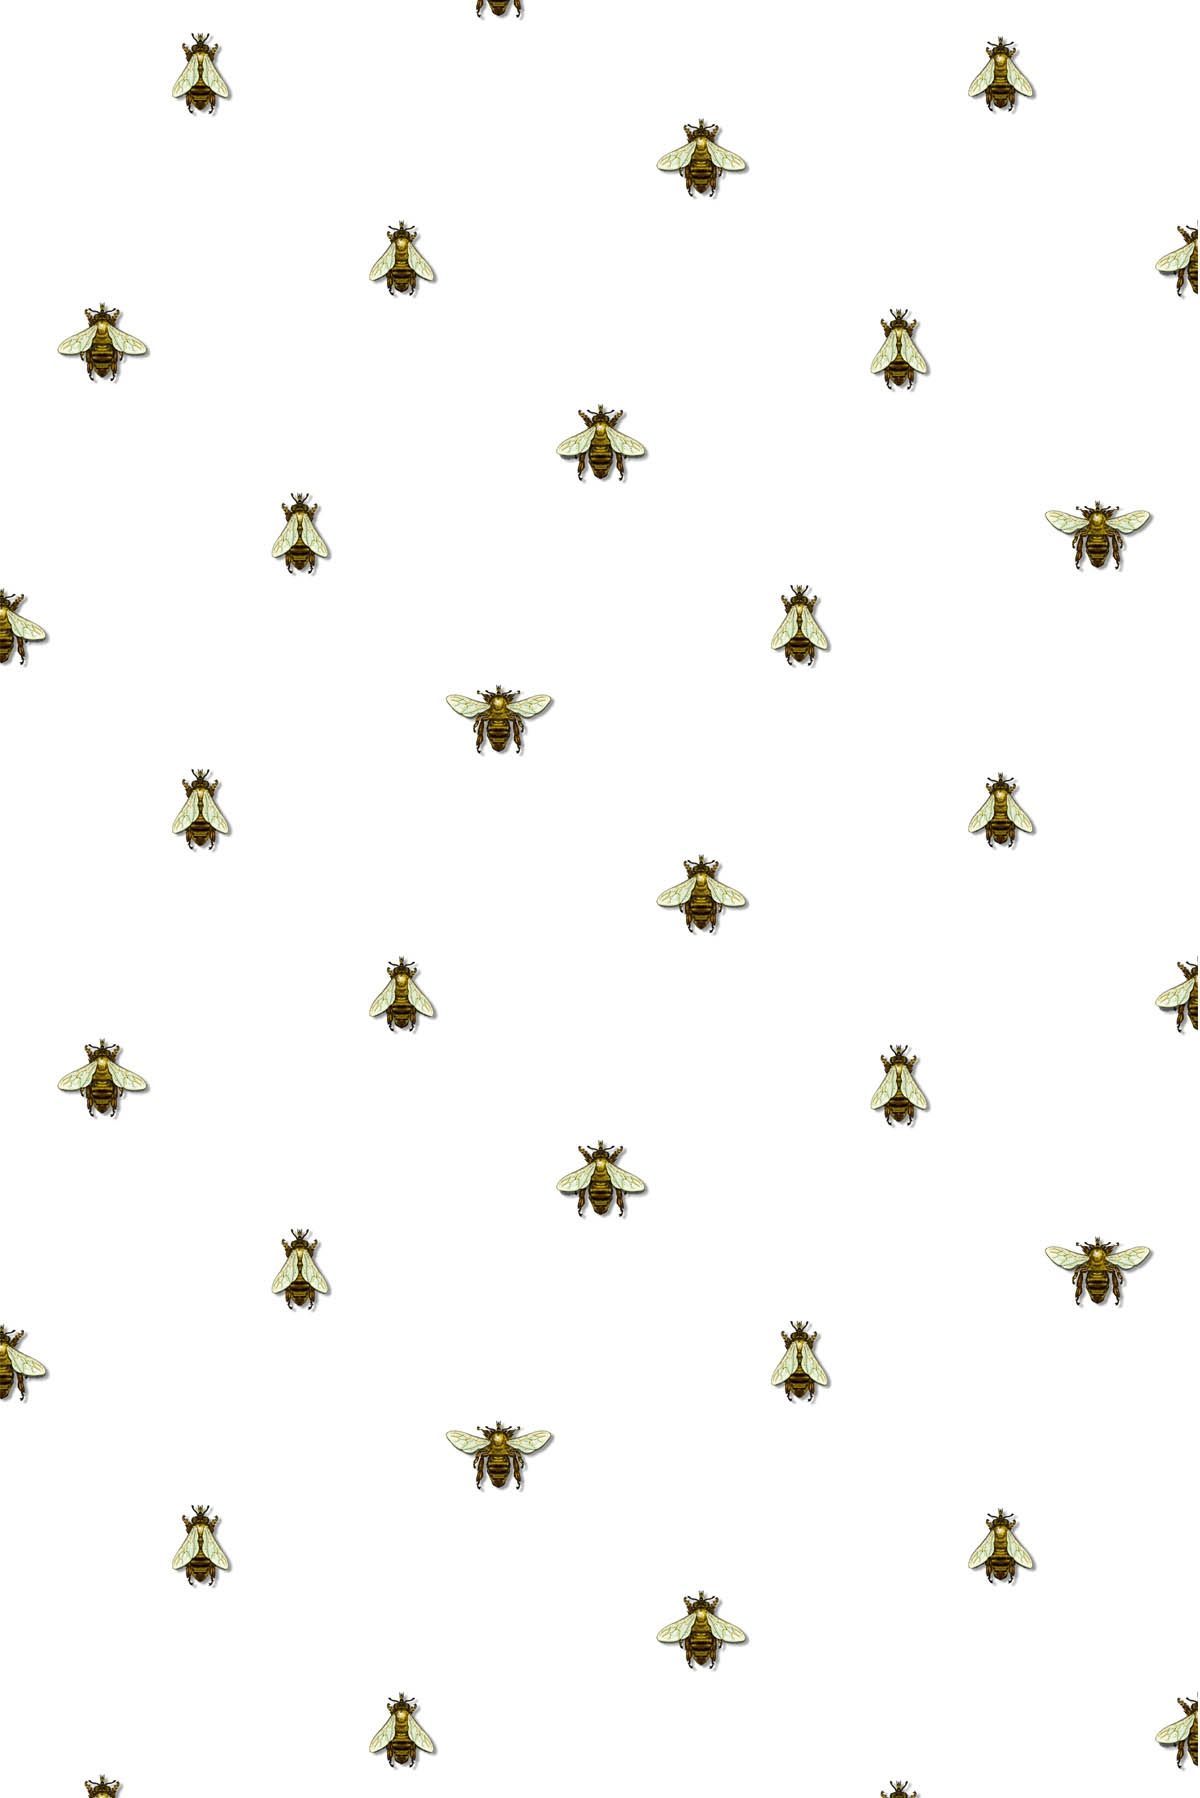 Bee happy HD wallpapers  Pxfuel